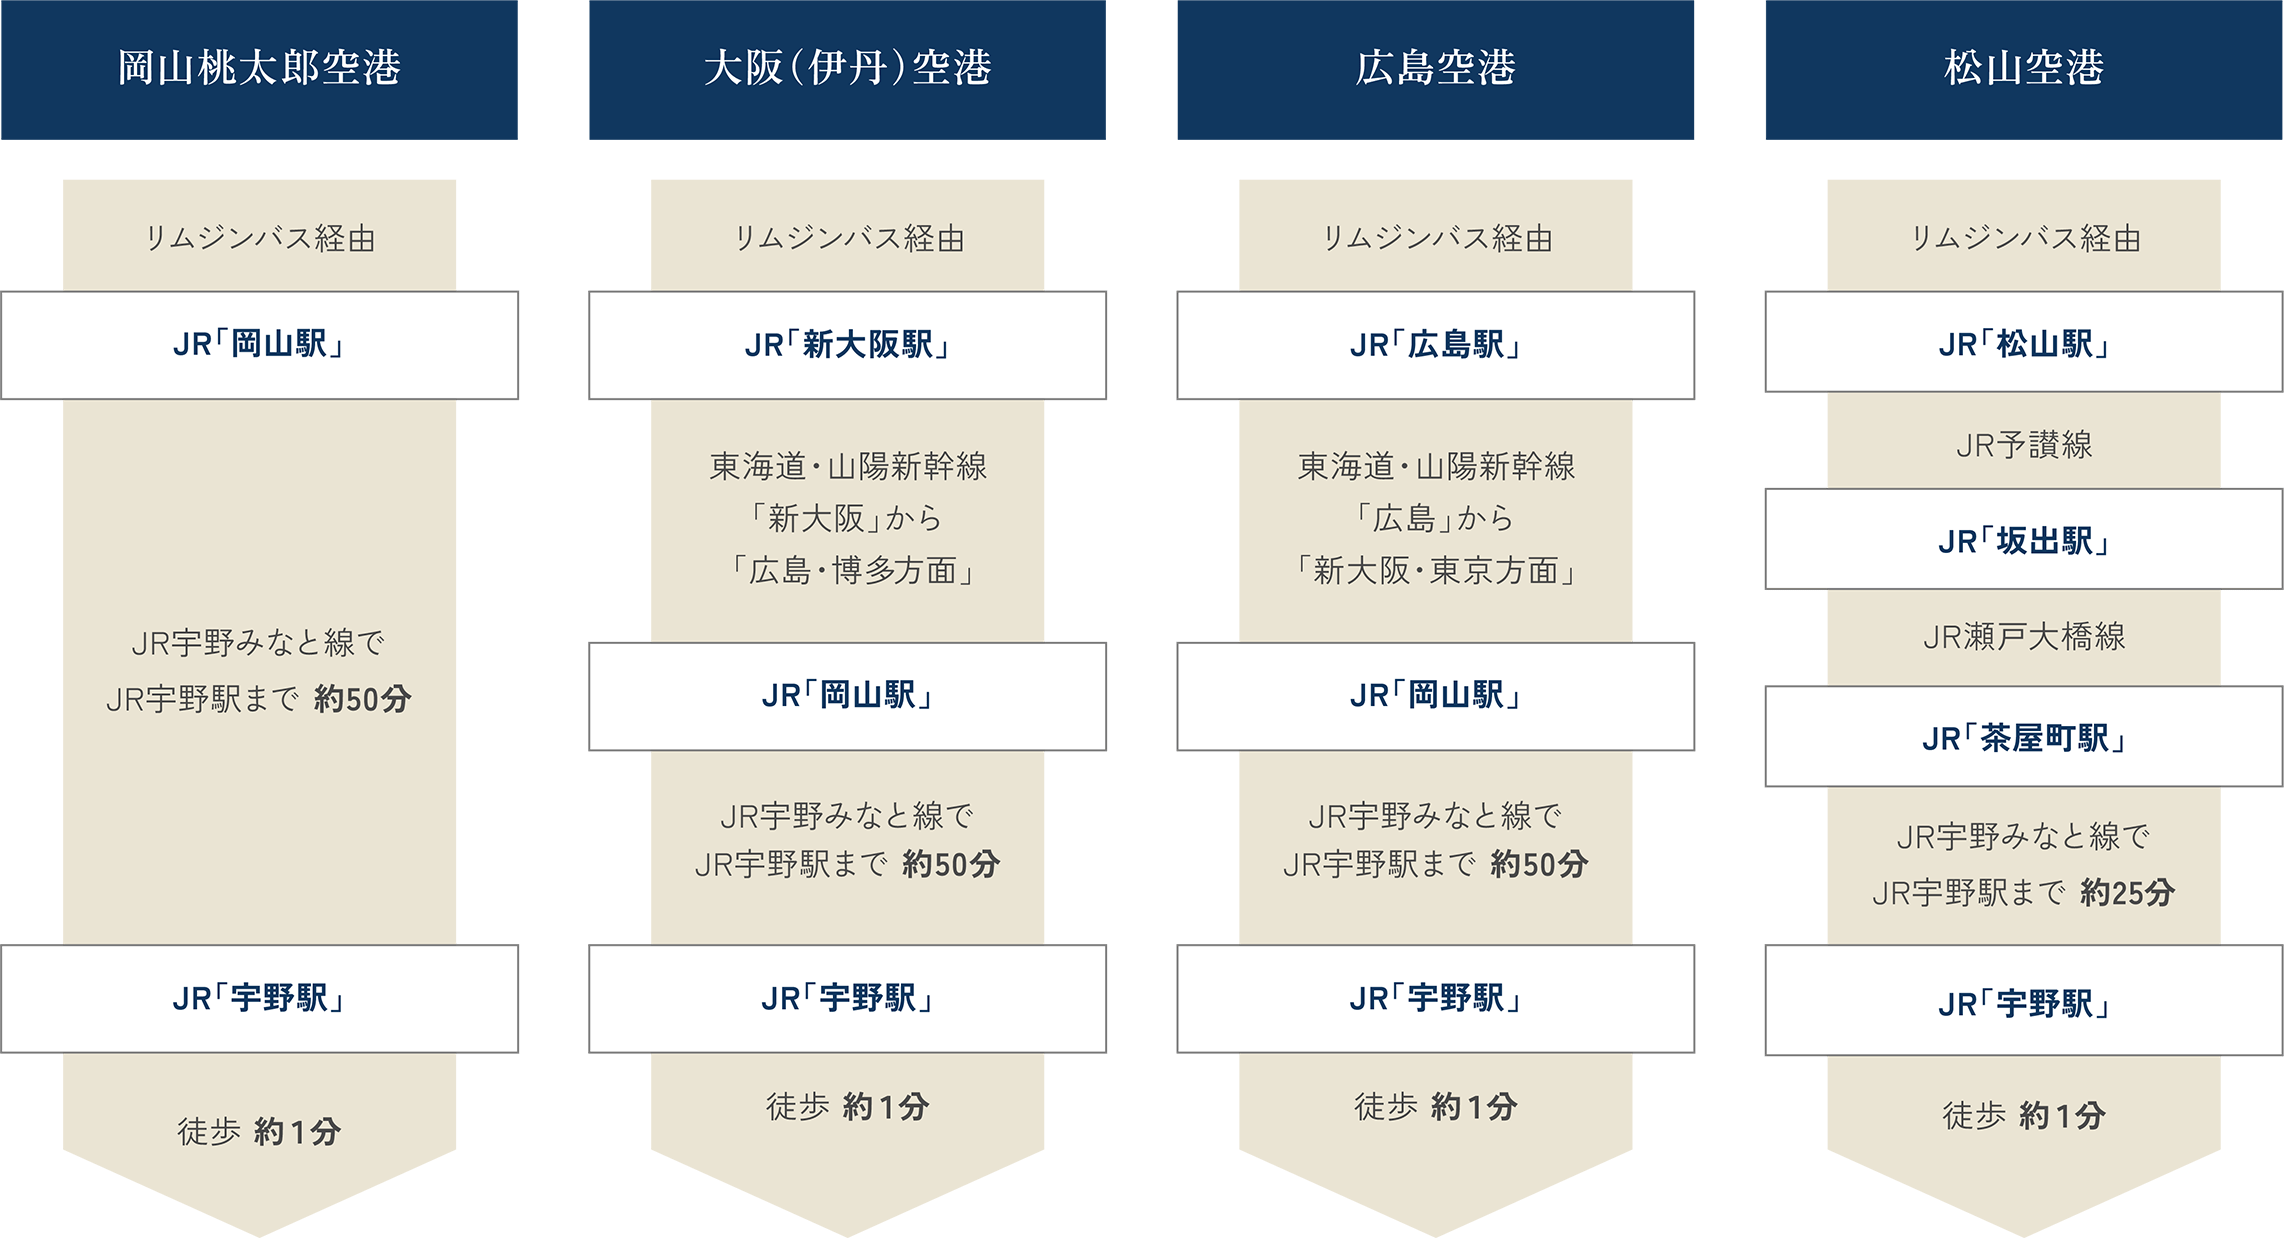 岡山桃太郎空港、大阪（伊丹）空港、広島空港、松山空港